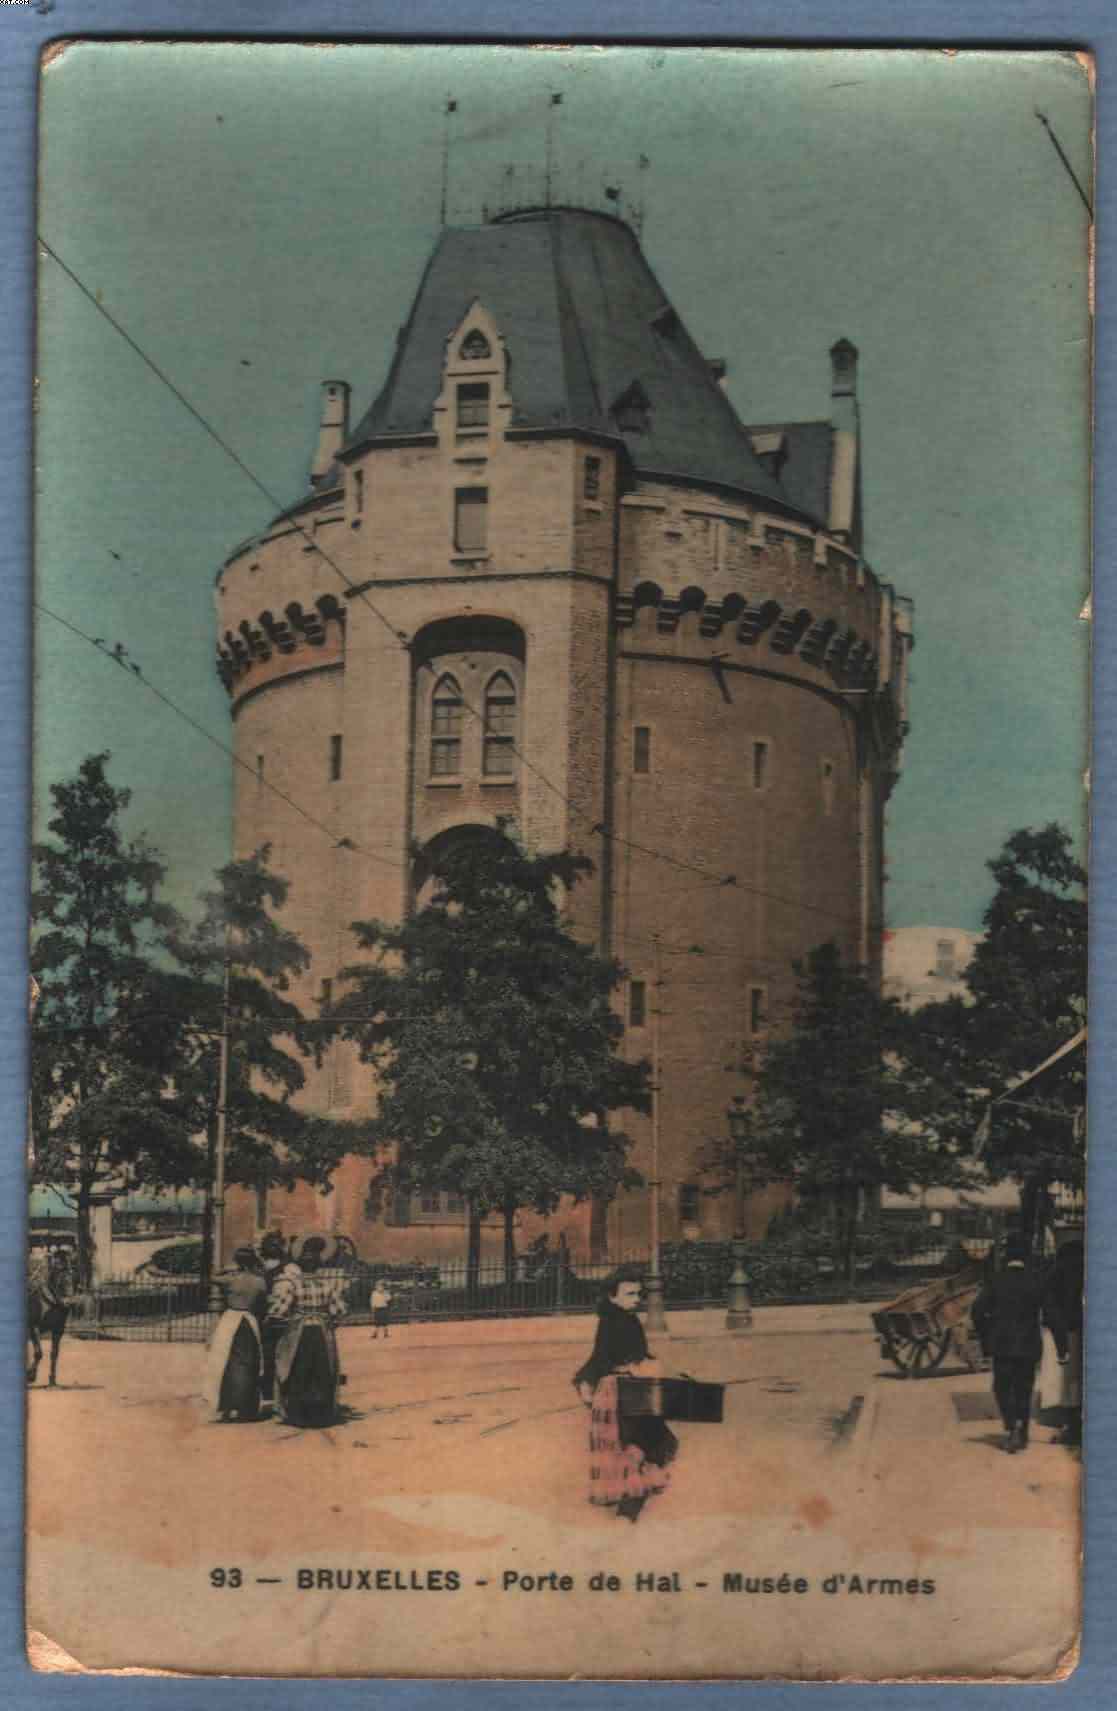 * BRUXELLES - BRUSSEL * (Edition Grand Bazar Anspach Nr. 93) Porte De Hal, Musée D'armes, De Halletoren, Wapenmuseum - Museums